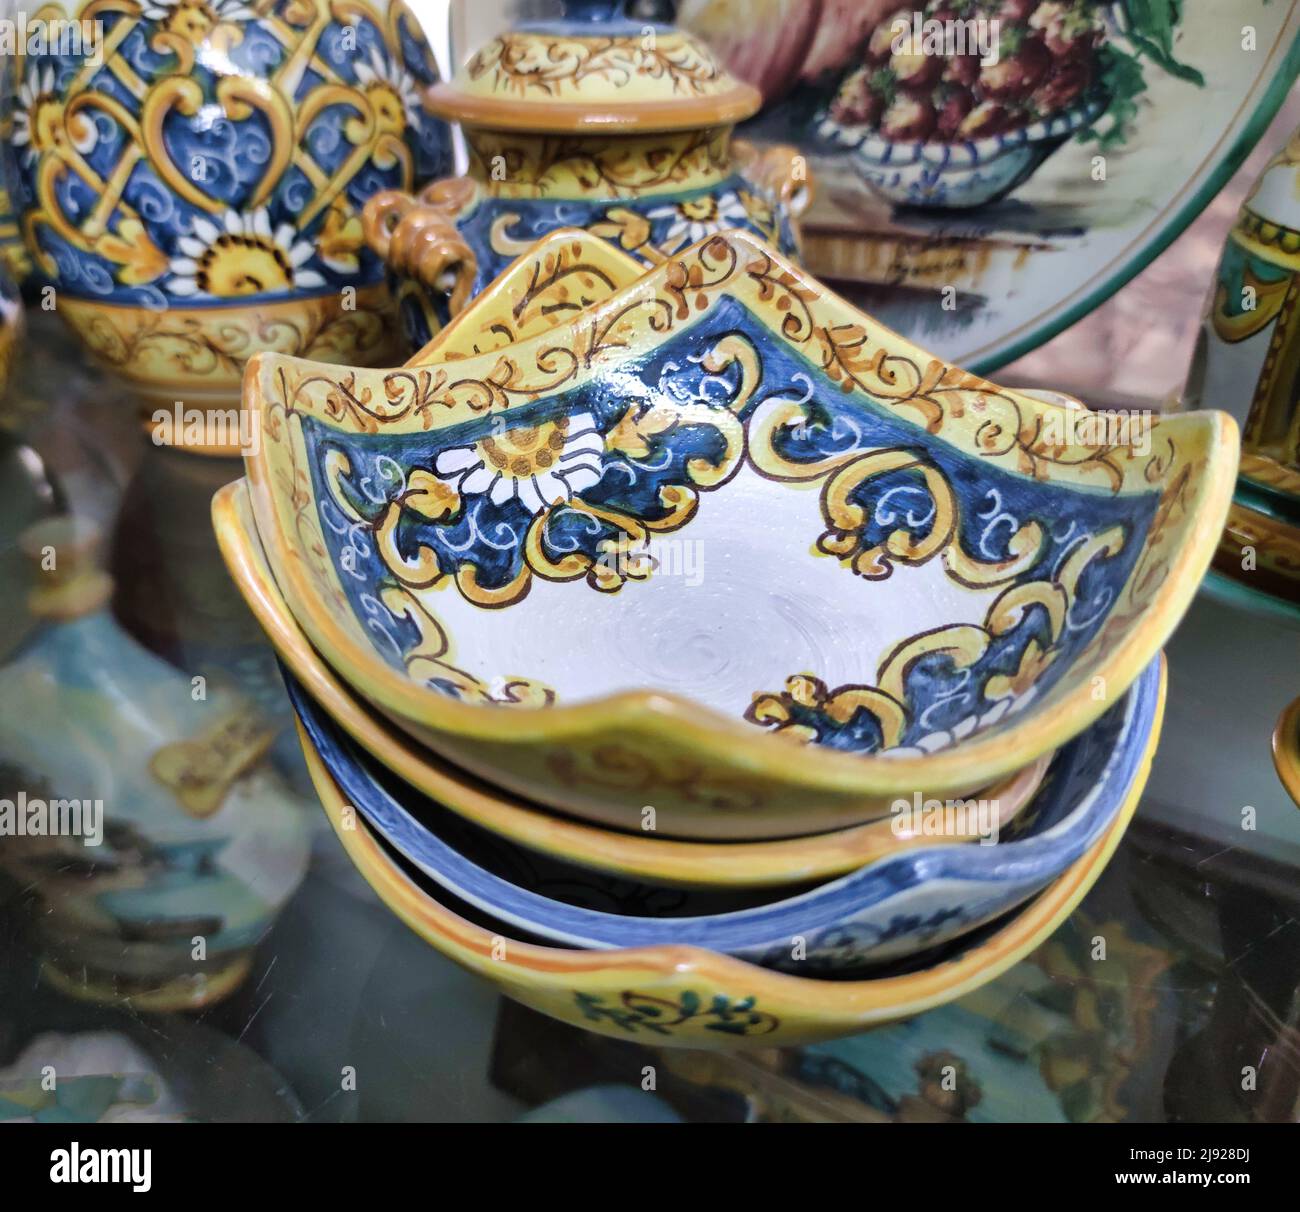 Famose ceramiche prodotte sulla costiera amalfitana da abili artigiani, Positano, Salerno, Campania, Italia. Foto Stock